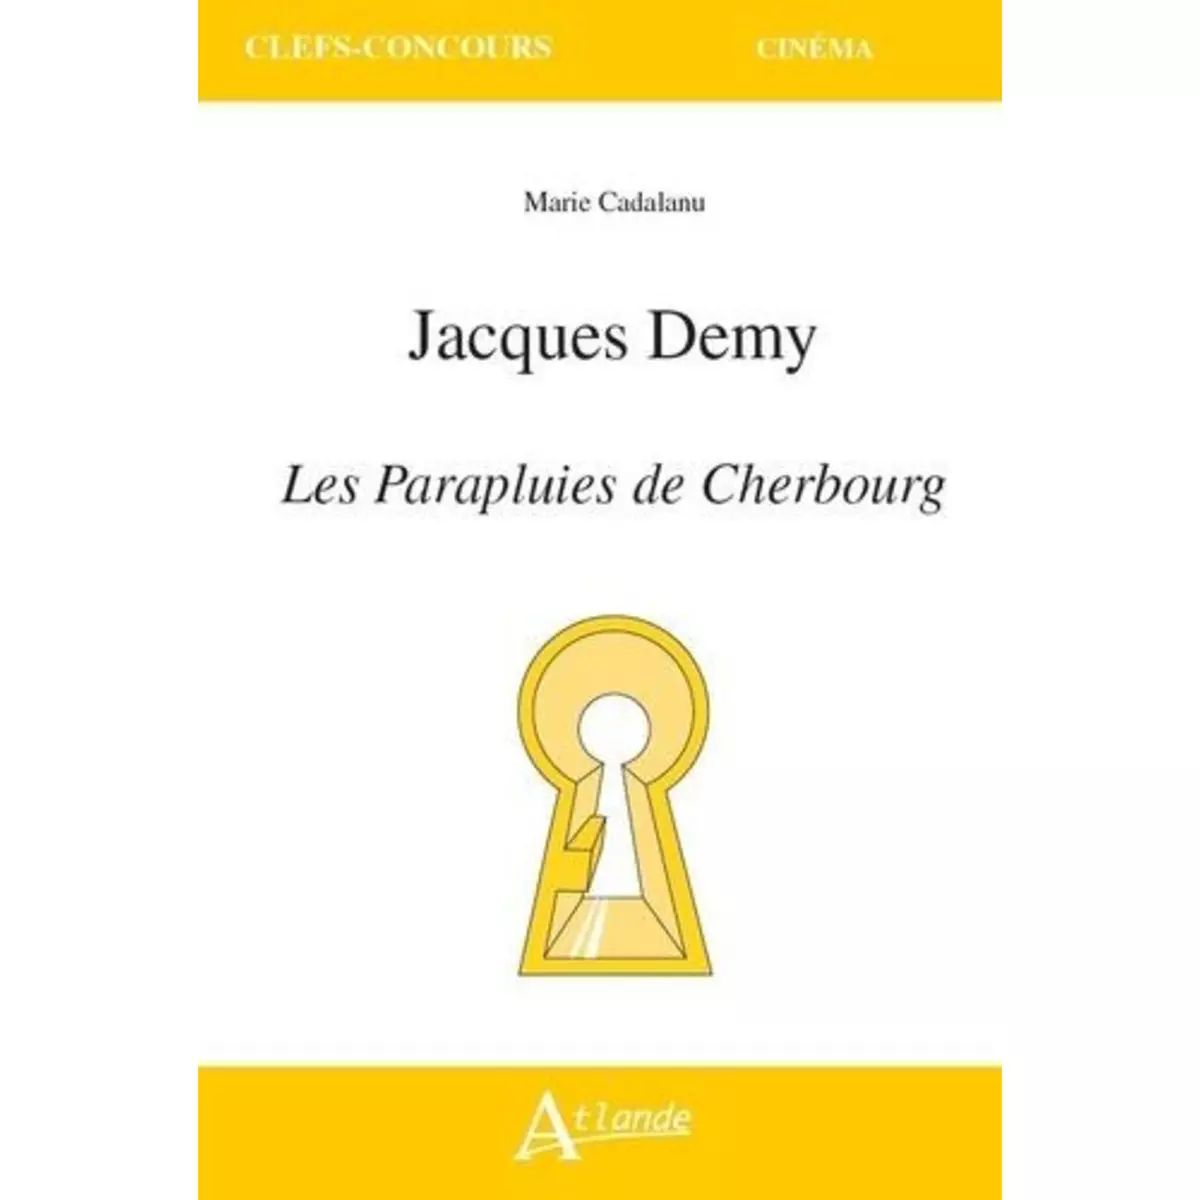  JACQUES DEMY. LES PARAPLUIES DE CHERBOURG, Cadalanu Marie